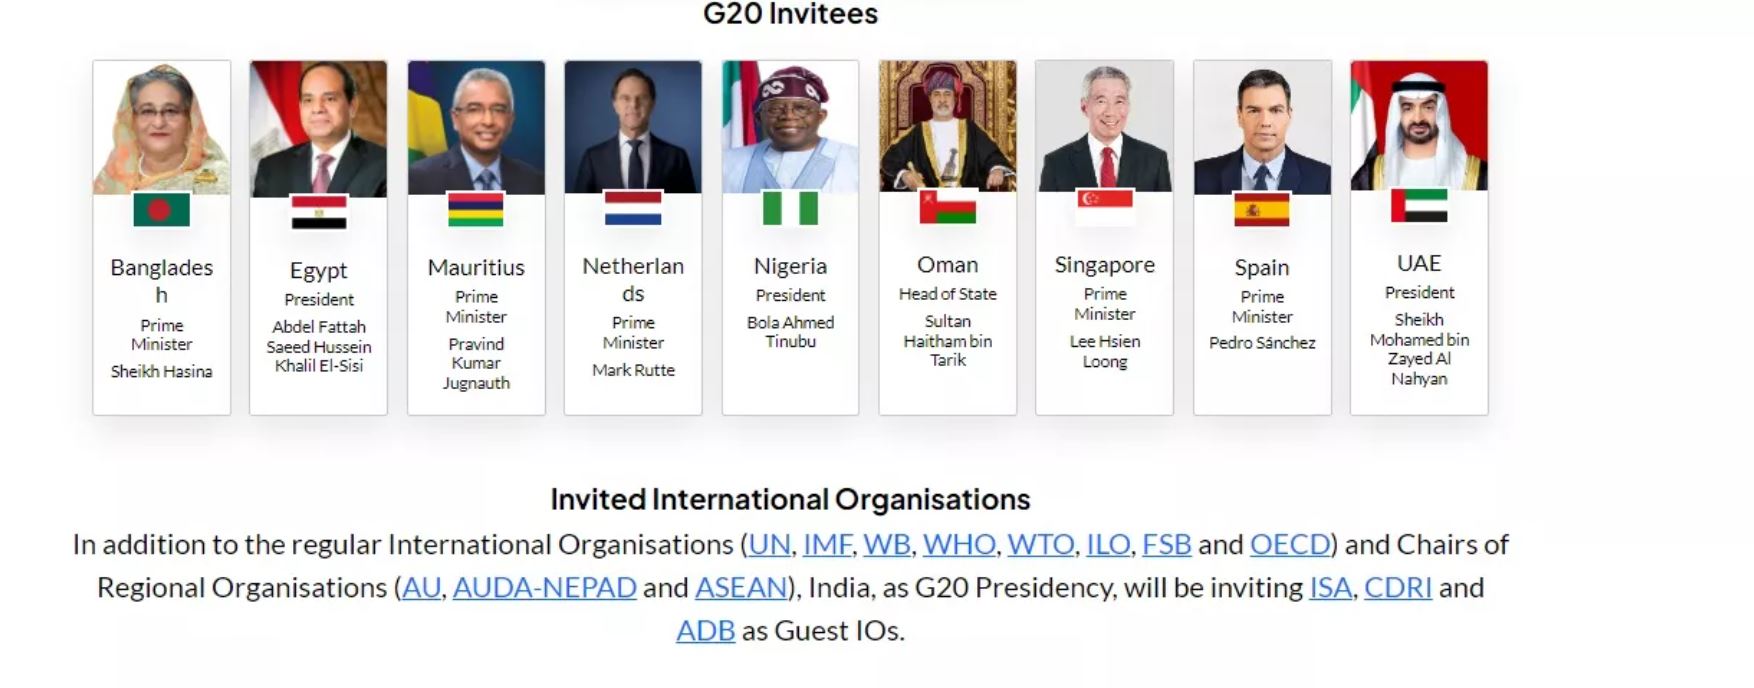 Украины нет в списке участников саммита G20 в Индии, зато пригласили Путина — фото